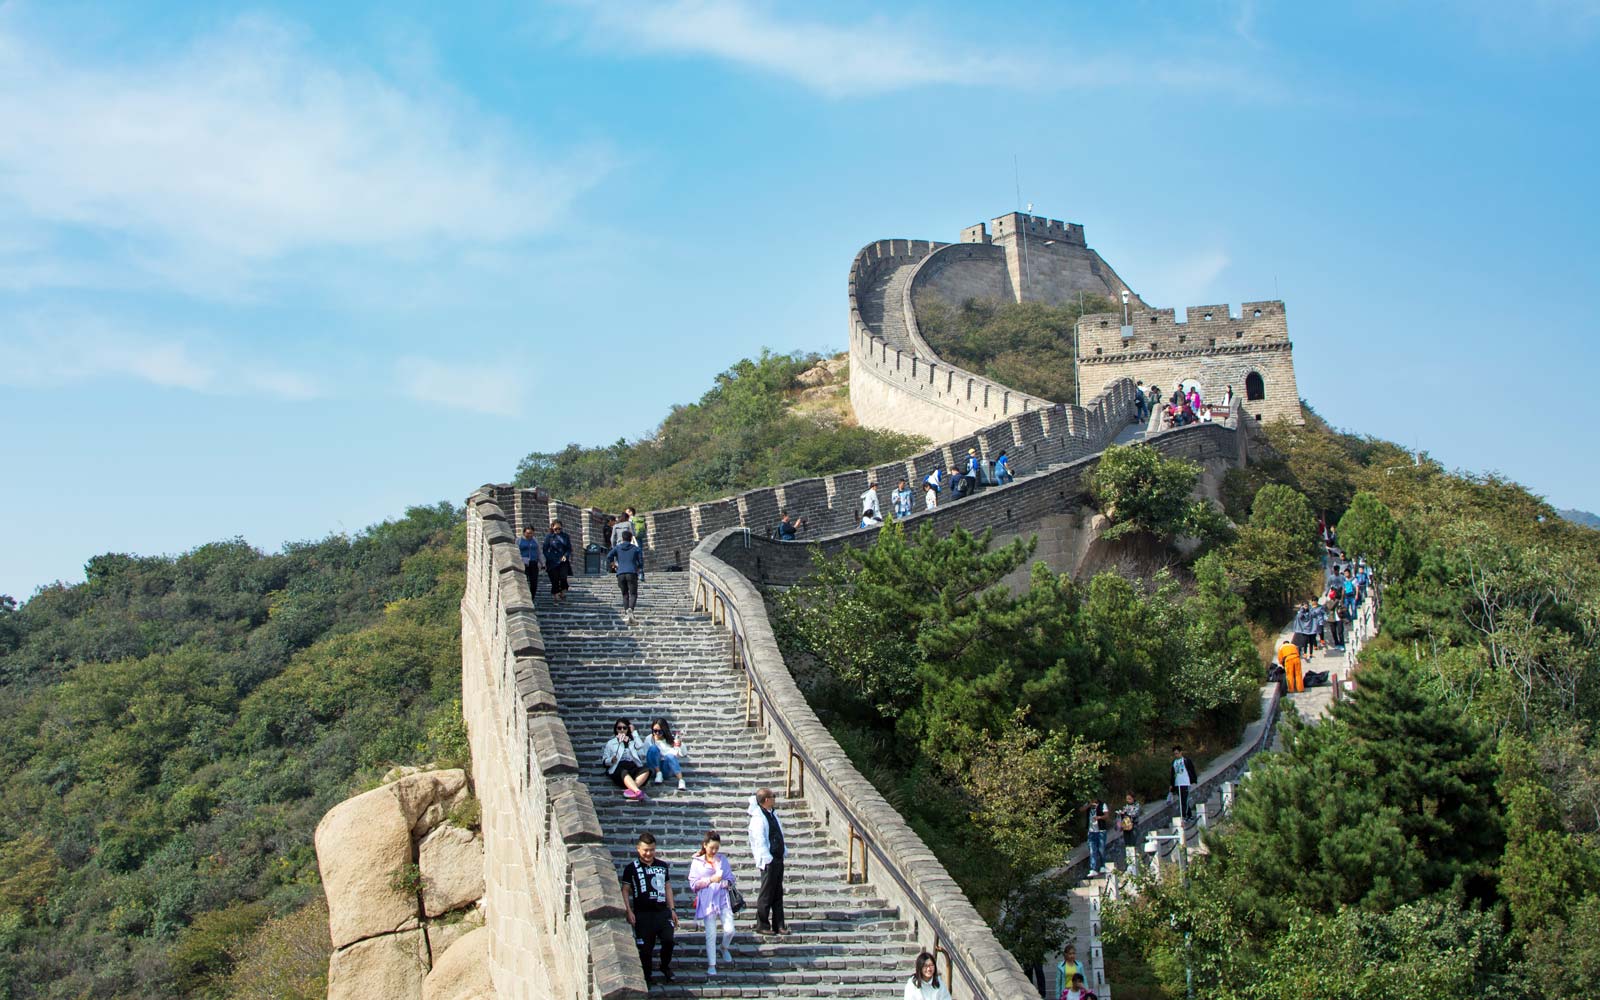 دیوار بزرگ چین - به همراه تصاویر و توضیحات در وب سایت تاپ تراول